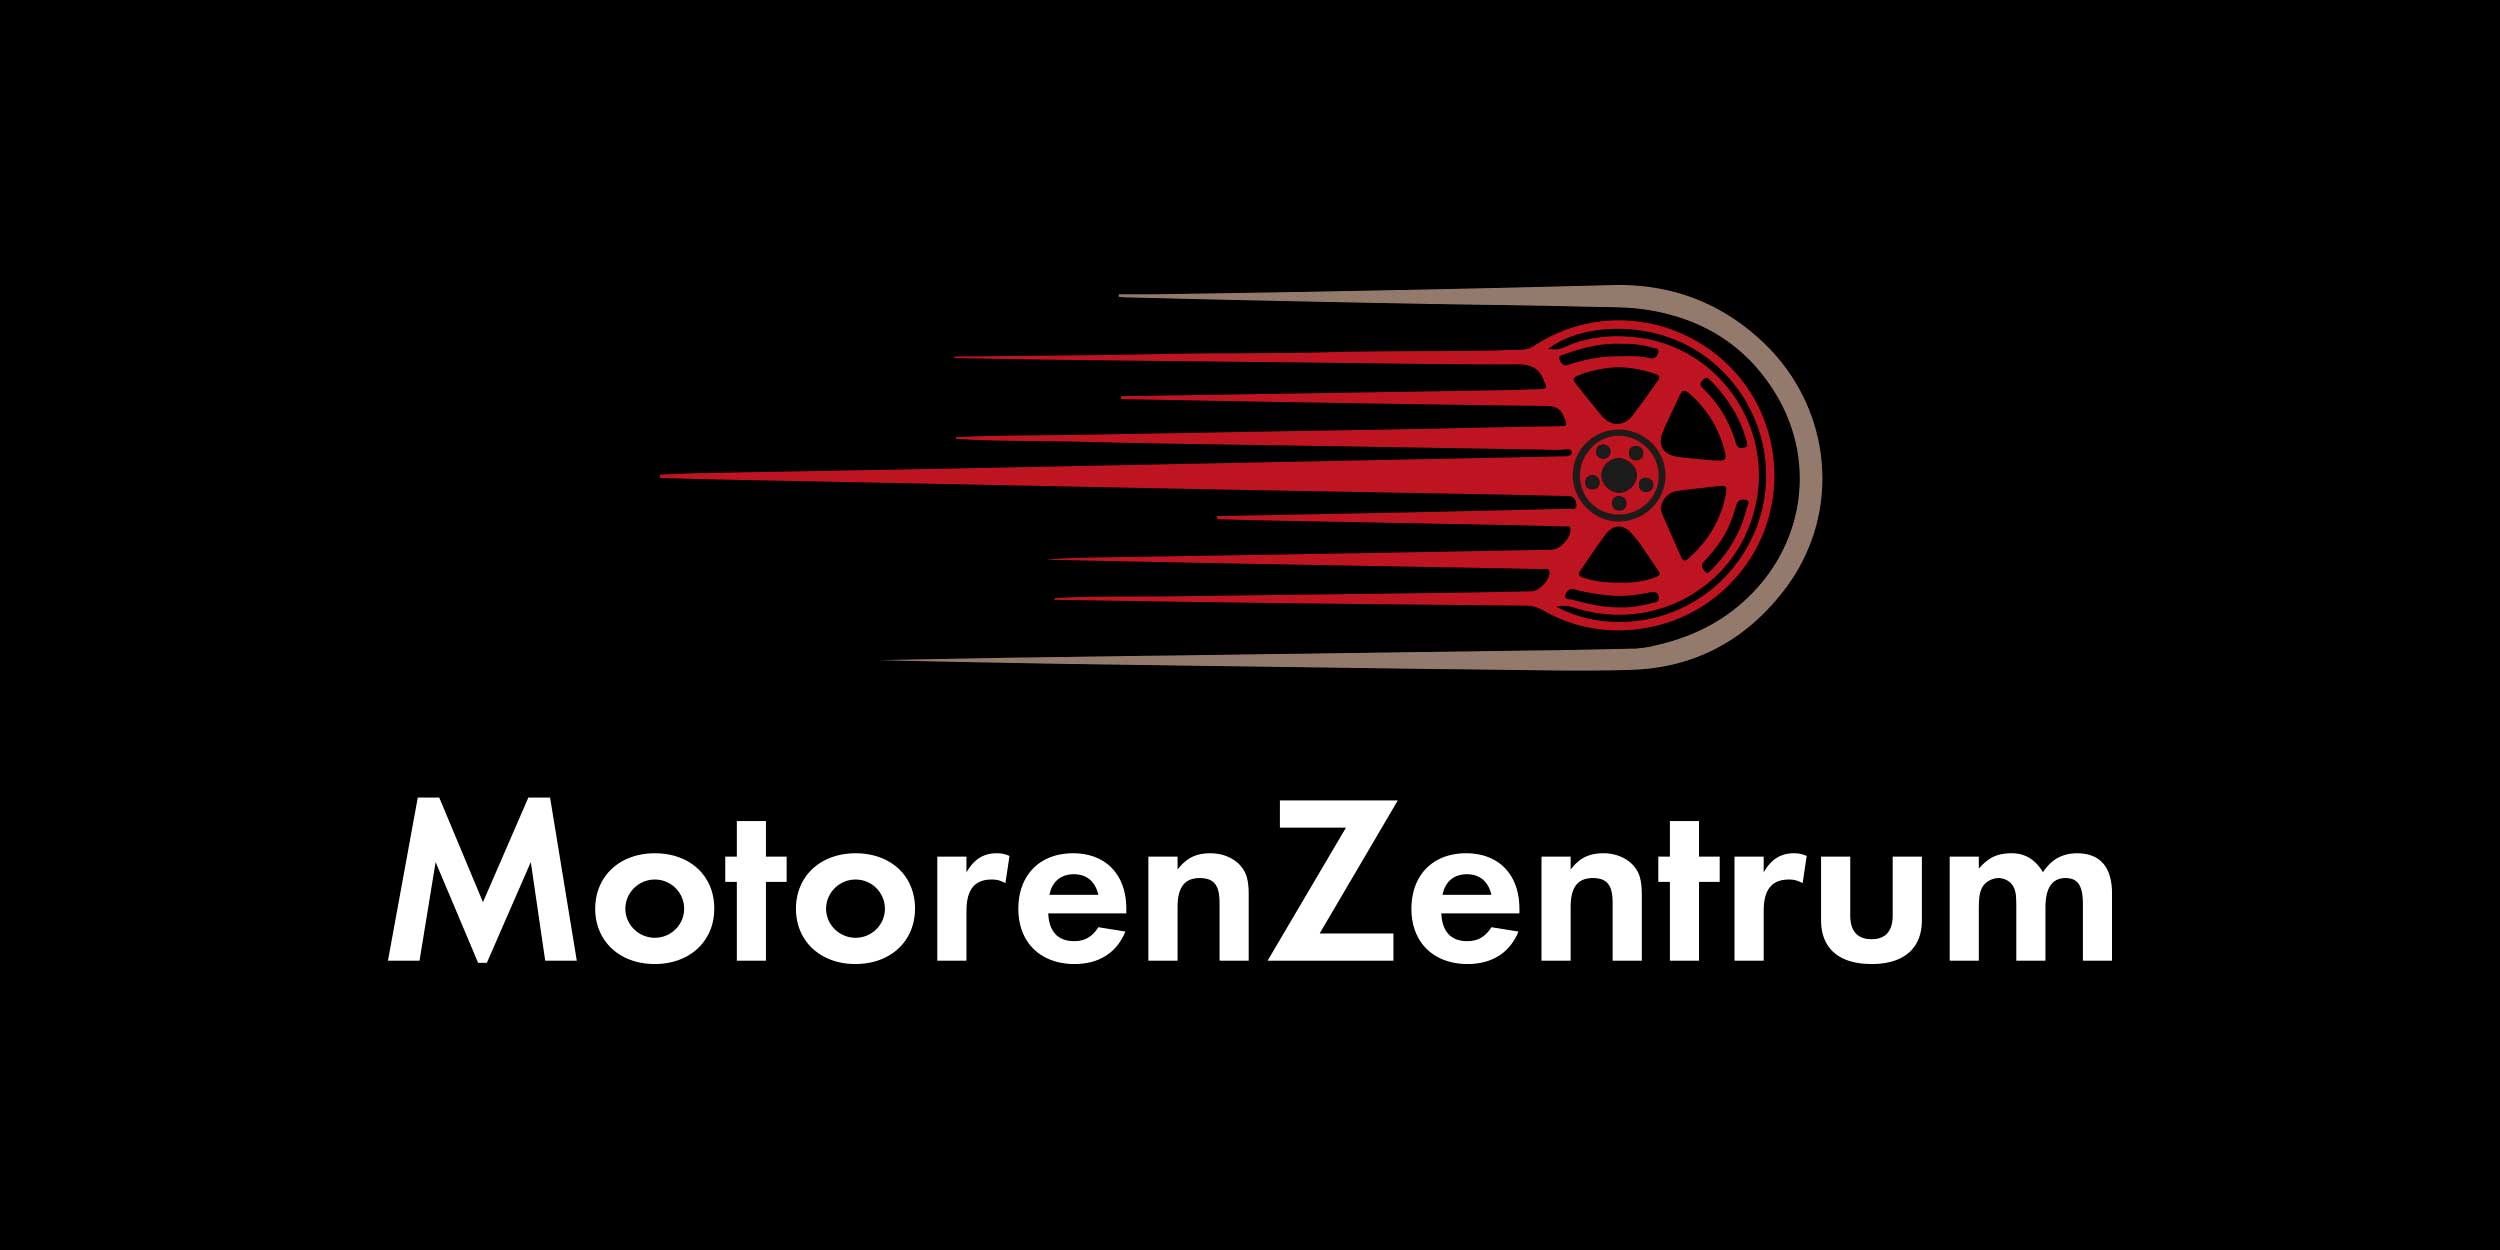 Motorenzentrum Logo